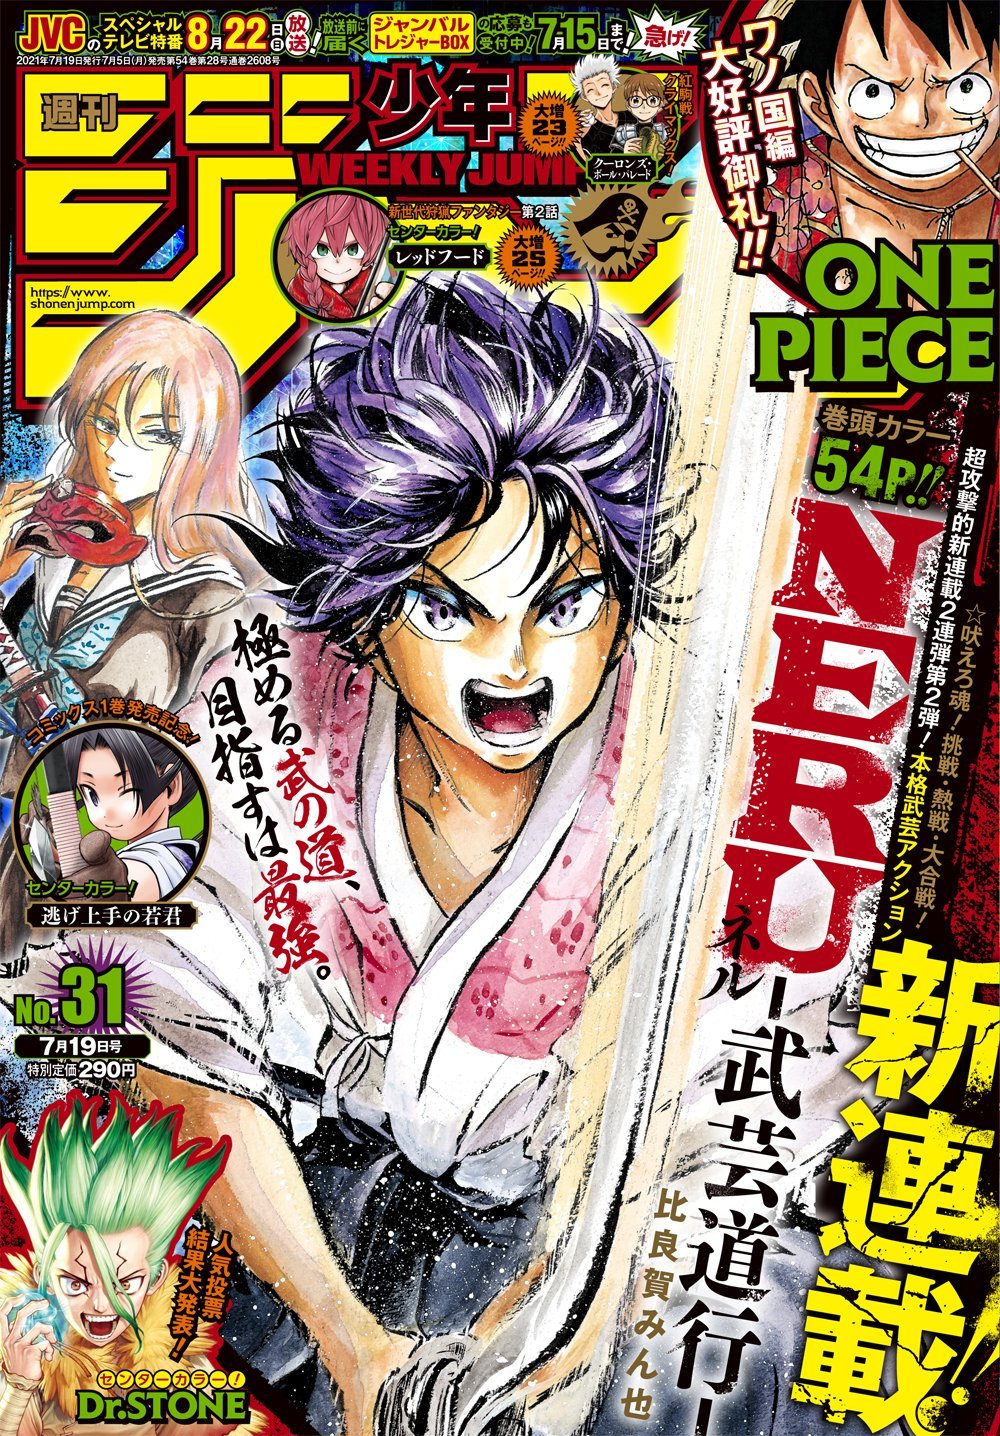 Bokutachi wa Benkyō ga Dekinai #5 - Vol. 5 (Issue)